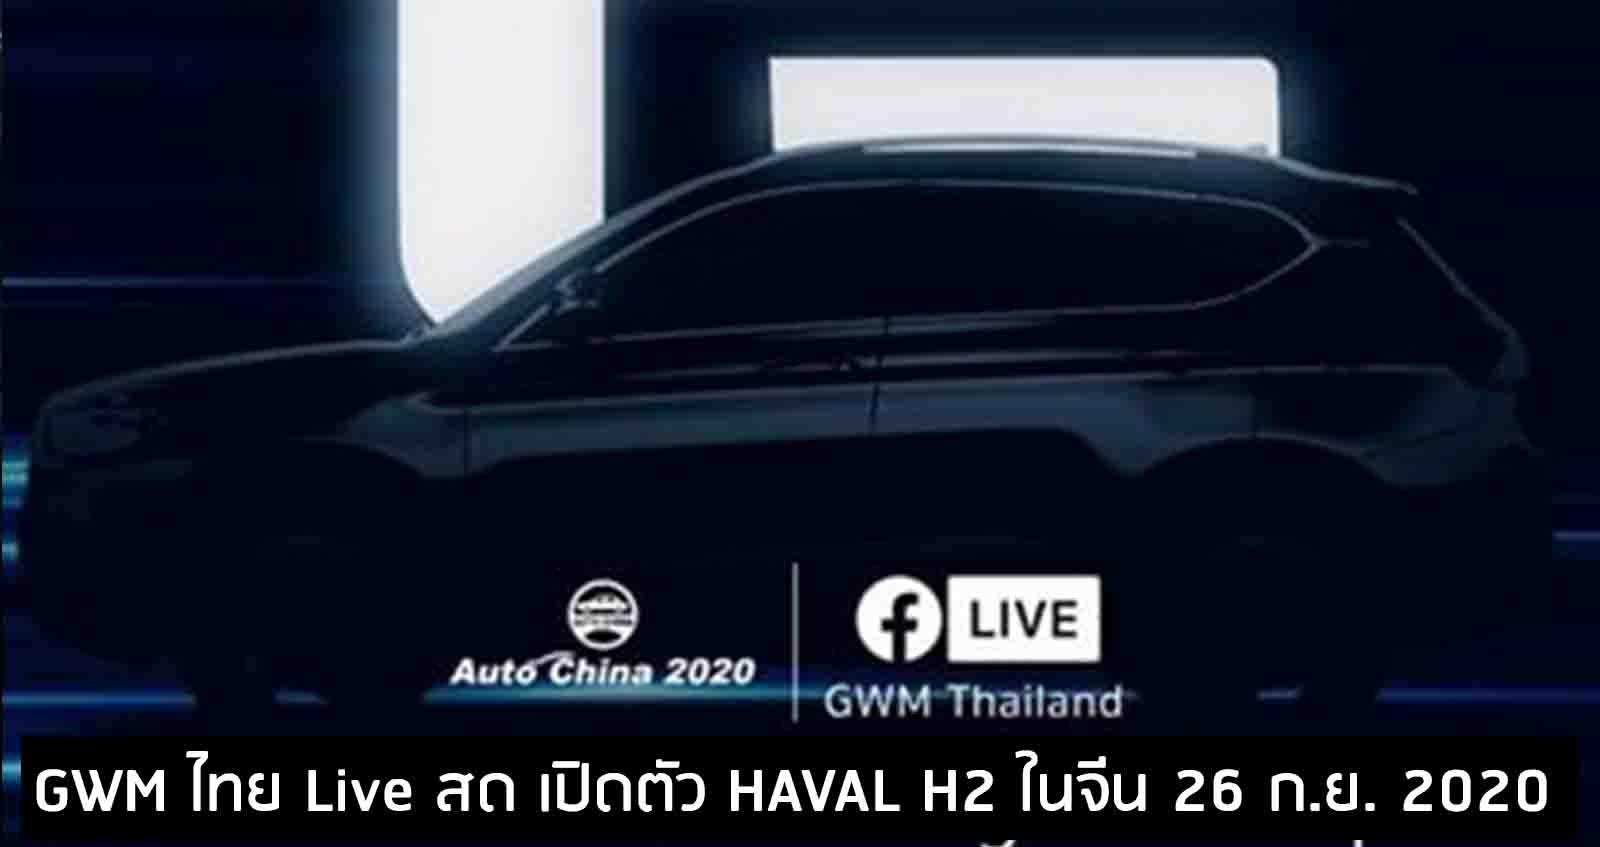 GWM ไทย Live สด เปิดตัว HAVAL H2 ครั้งแรกของโลก 26 กันยายนนี้ ในจีน